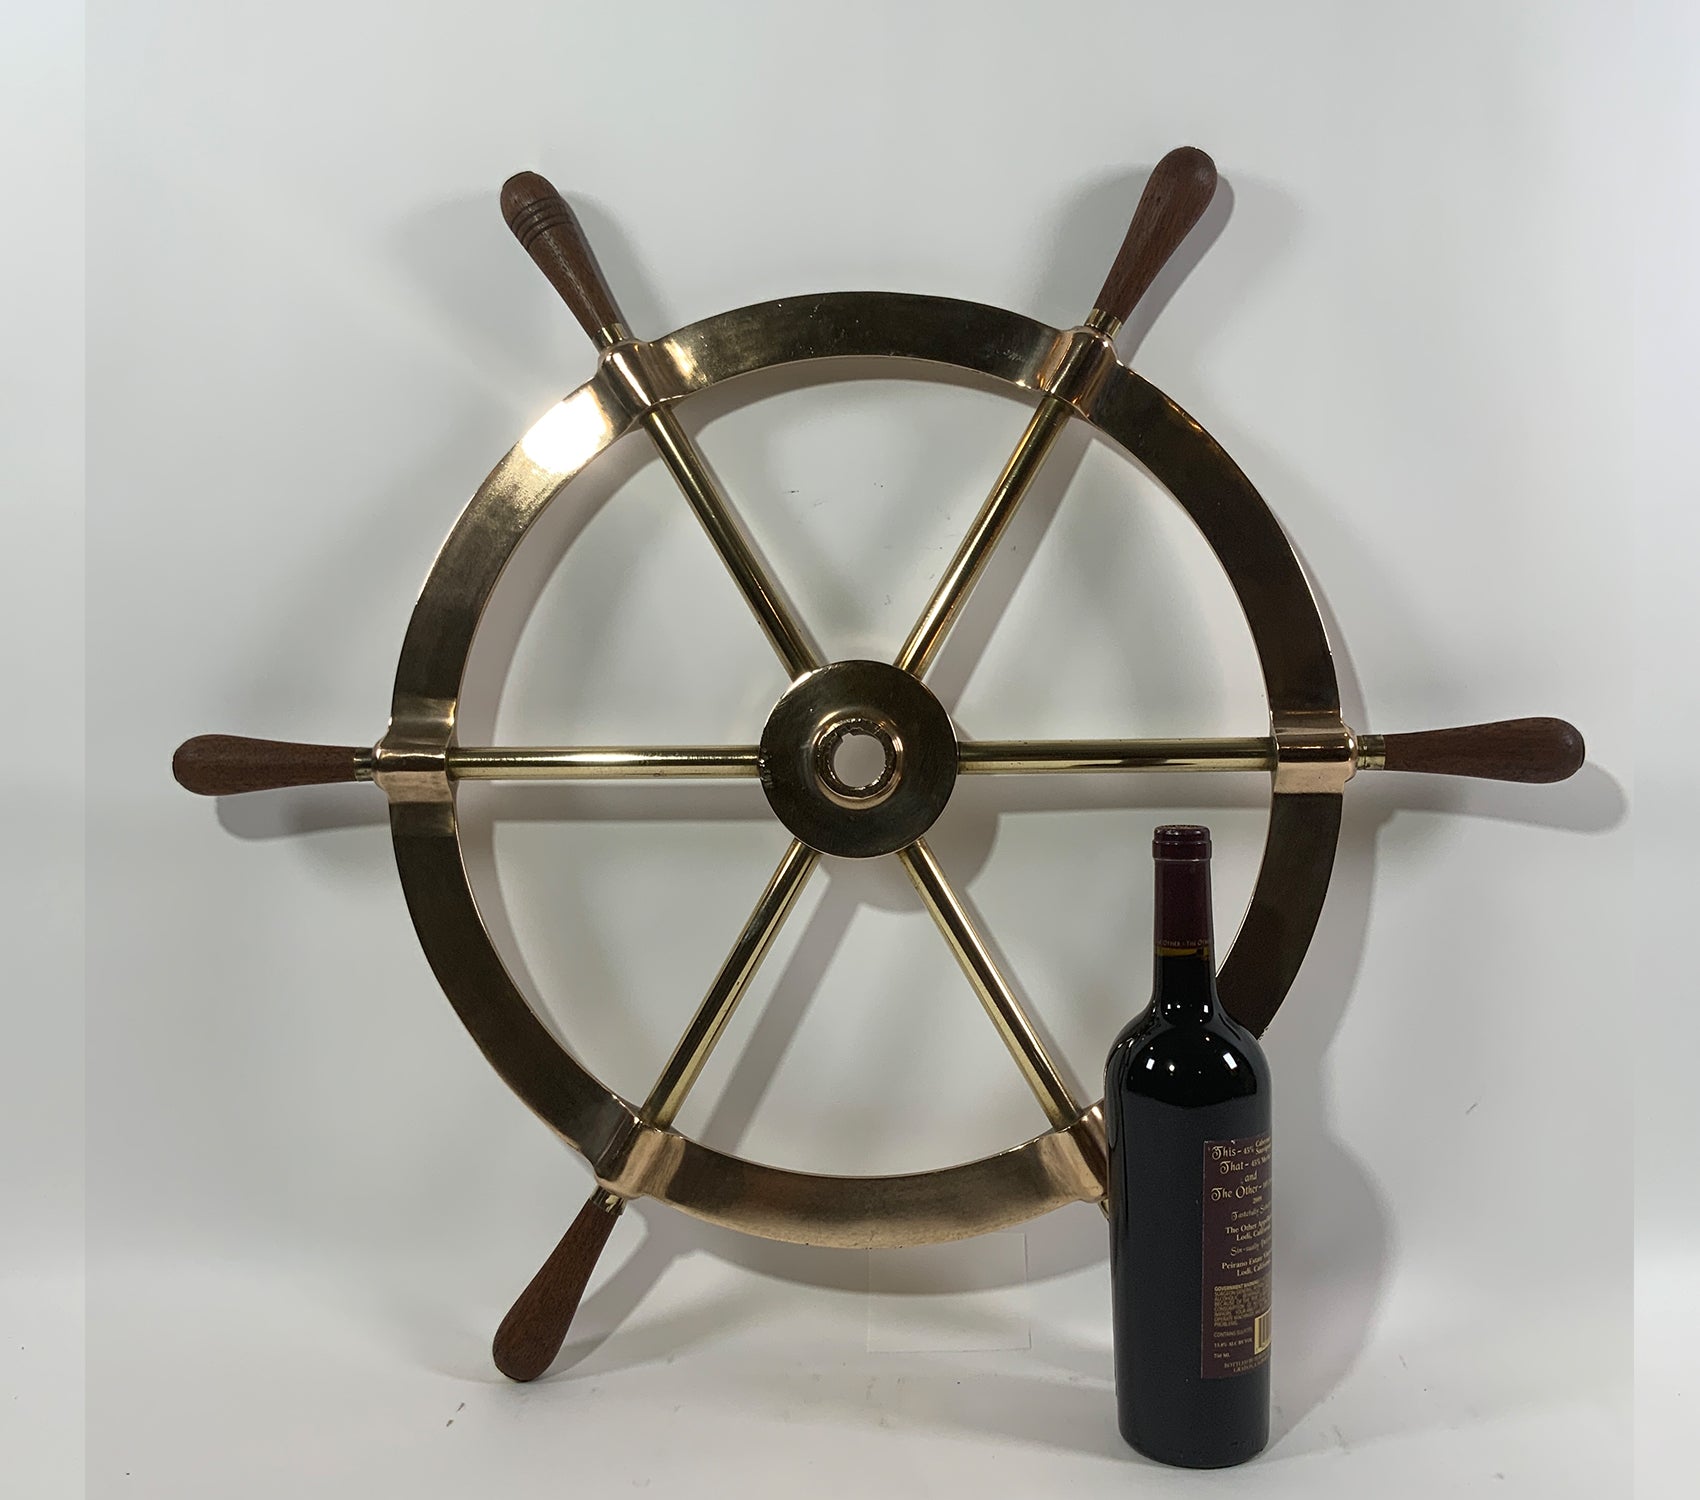 Six Spoke Solid Brass Yacht Wheel - Lannan Gallery